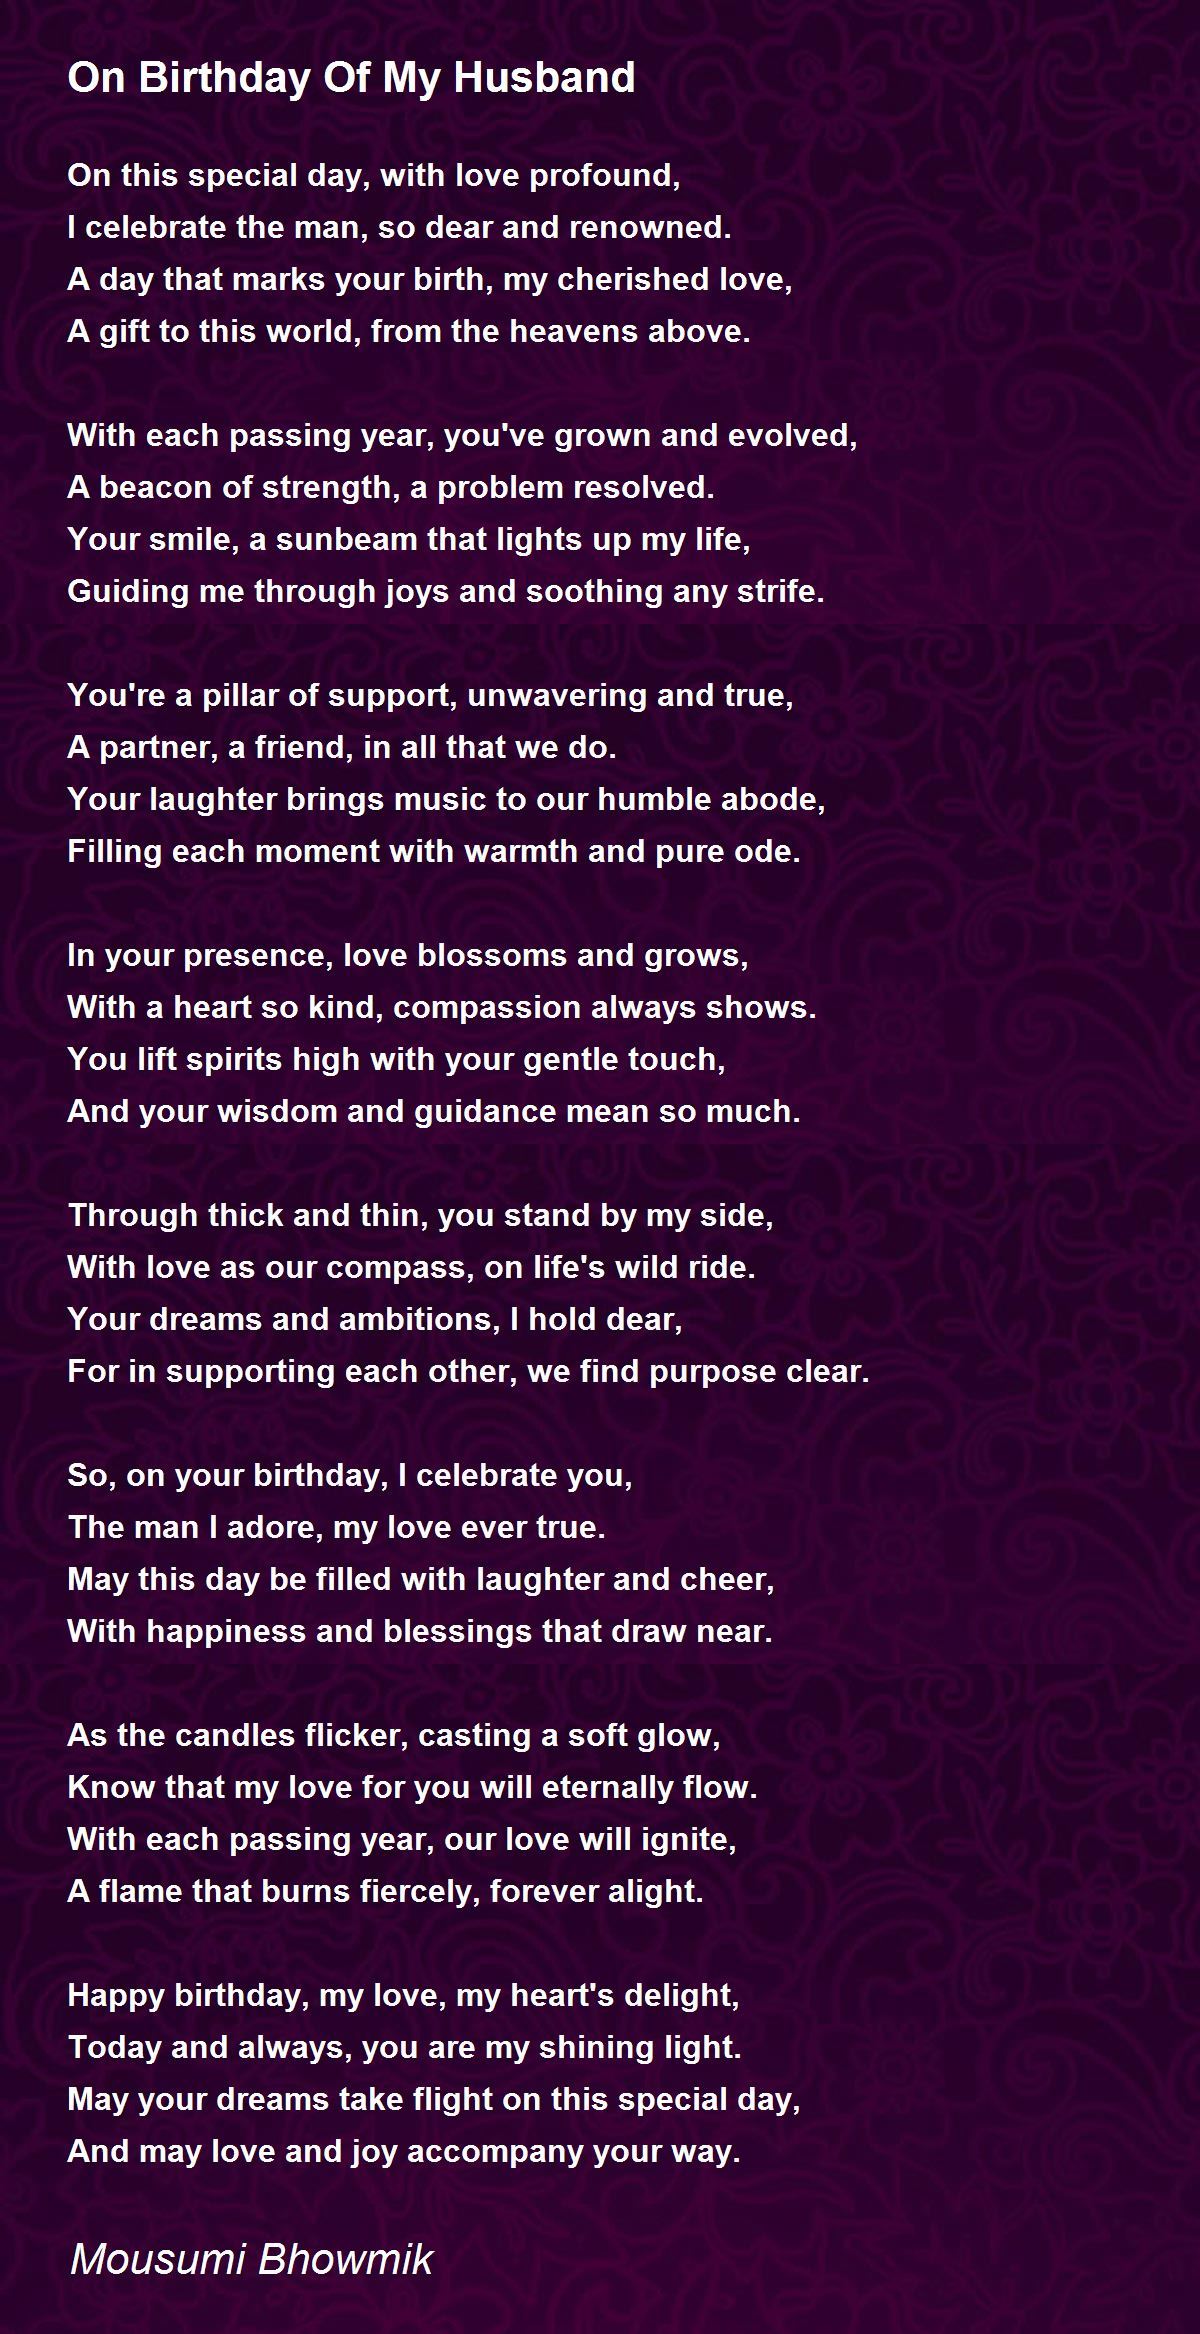 On Birthday Of My Husband Poem